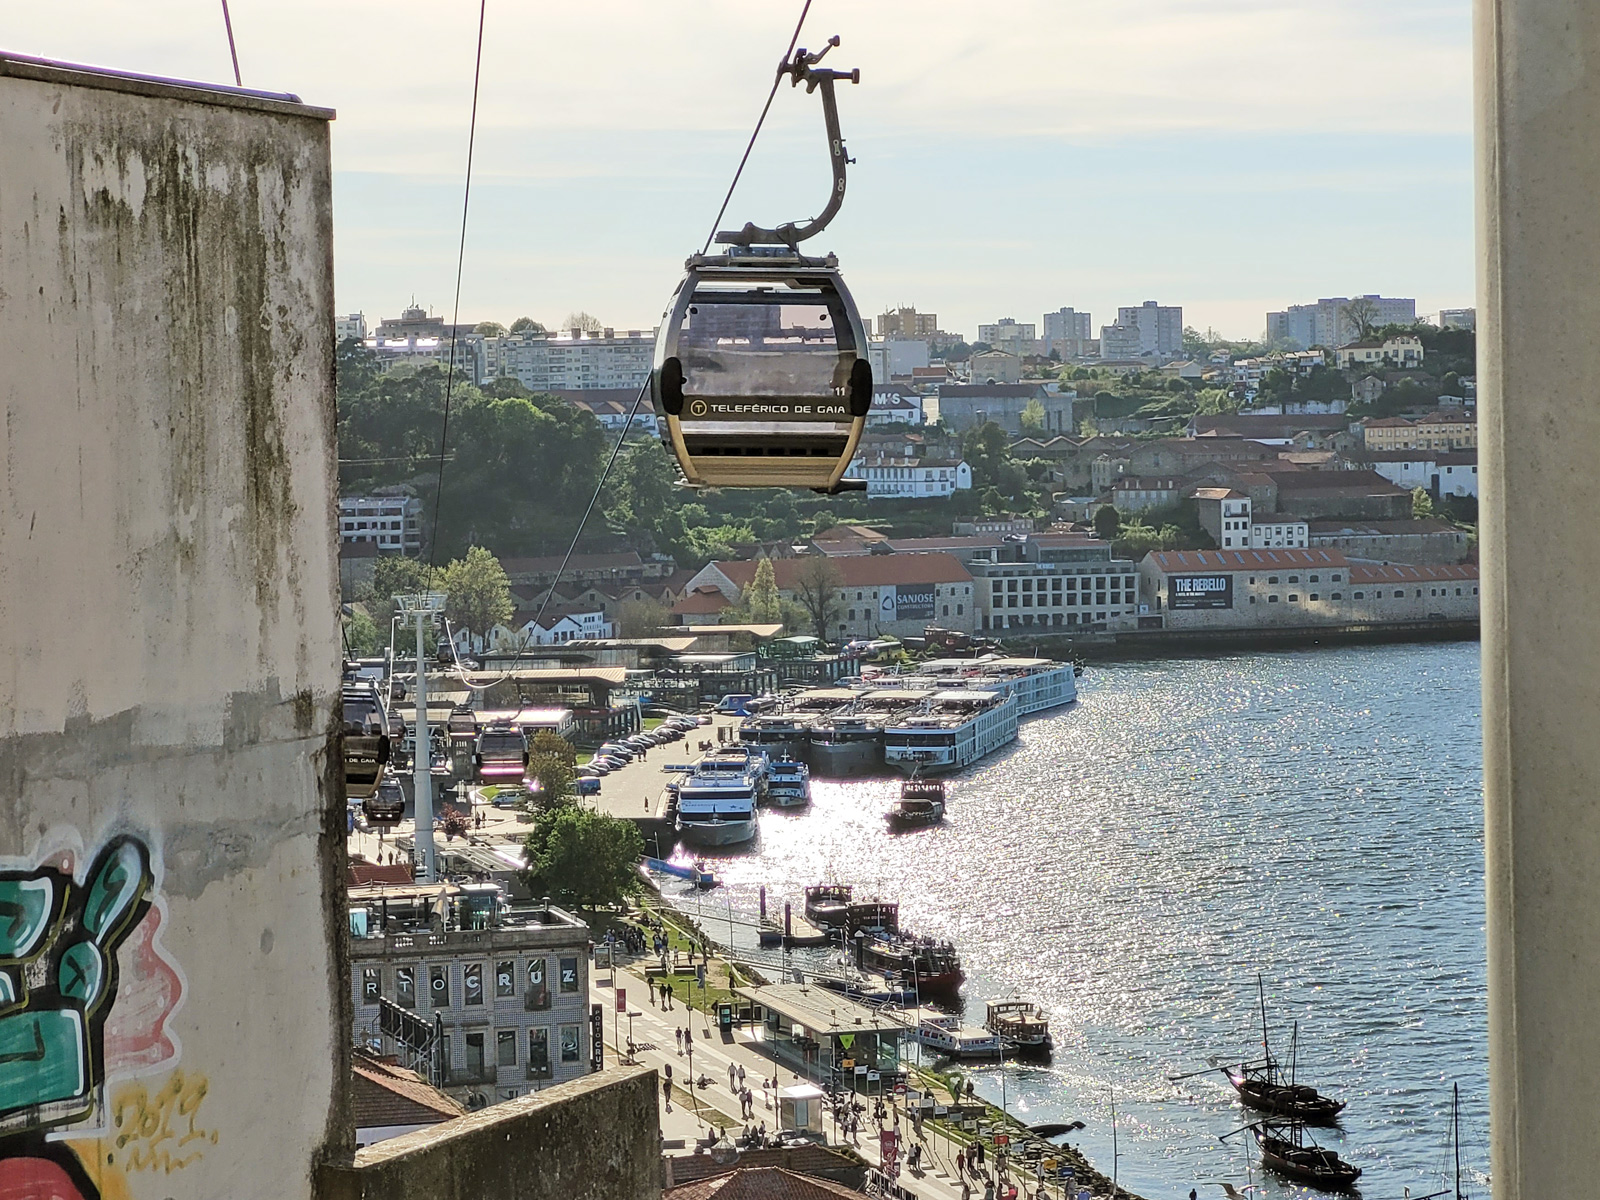 The Porto cable car